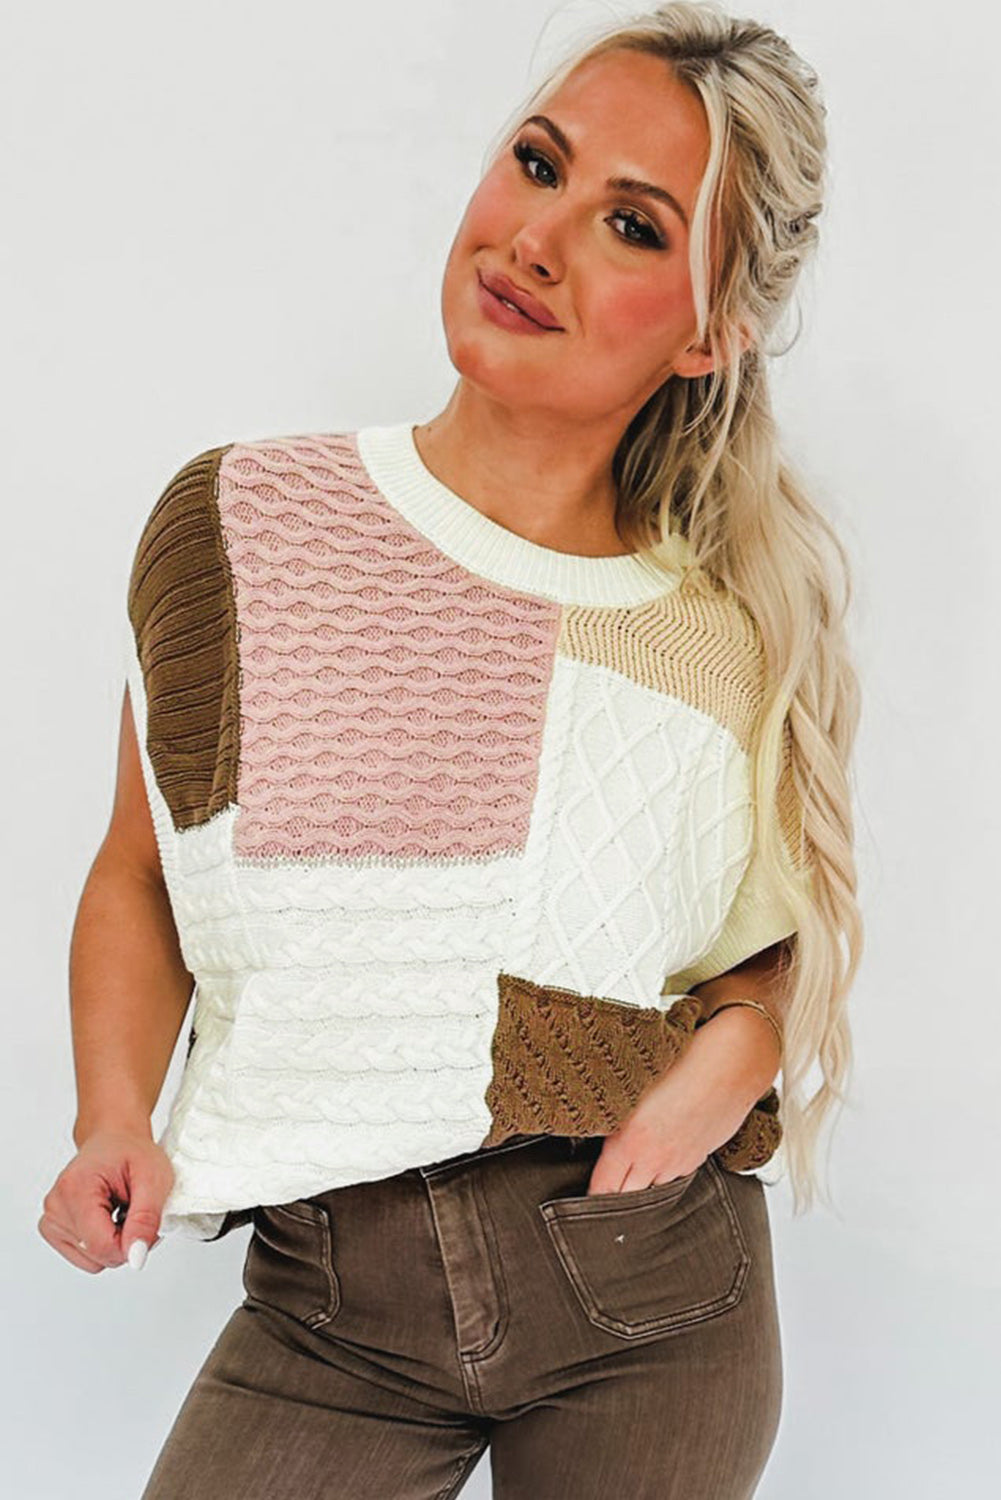 Višebojna majica džempera s teksturom obojenih blokova